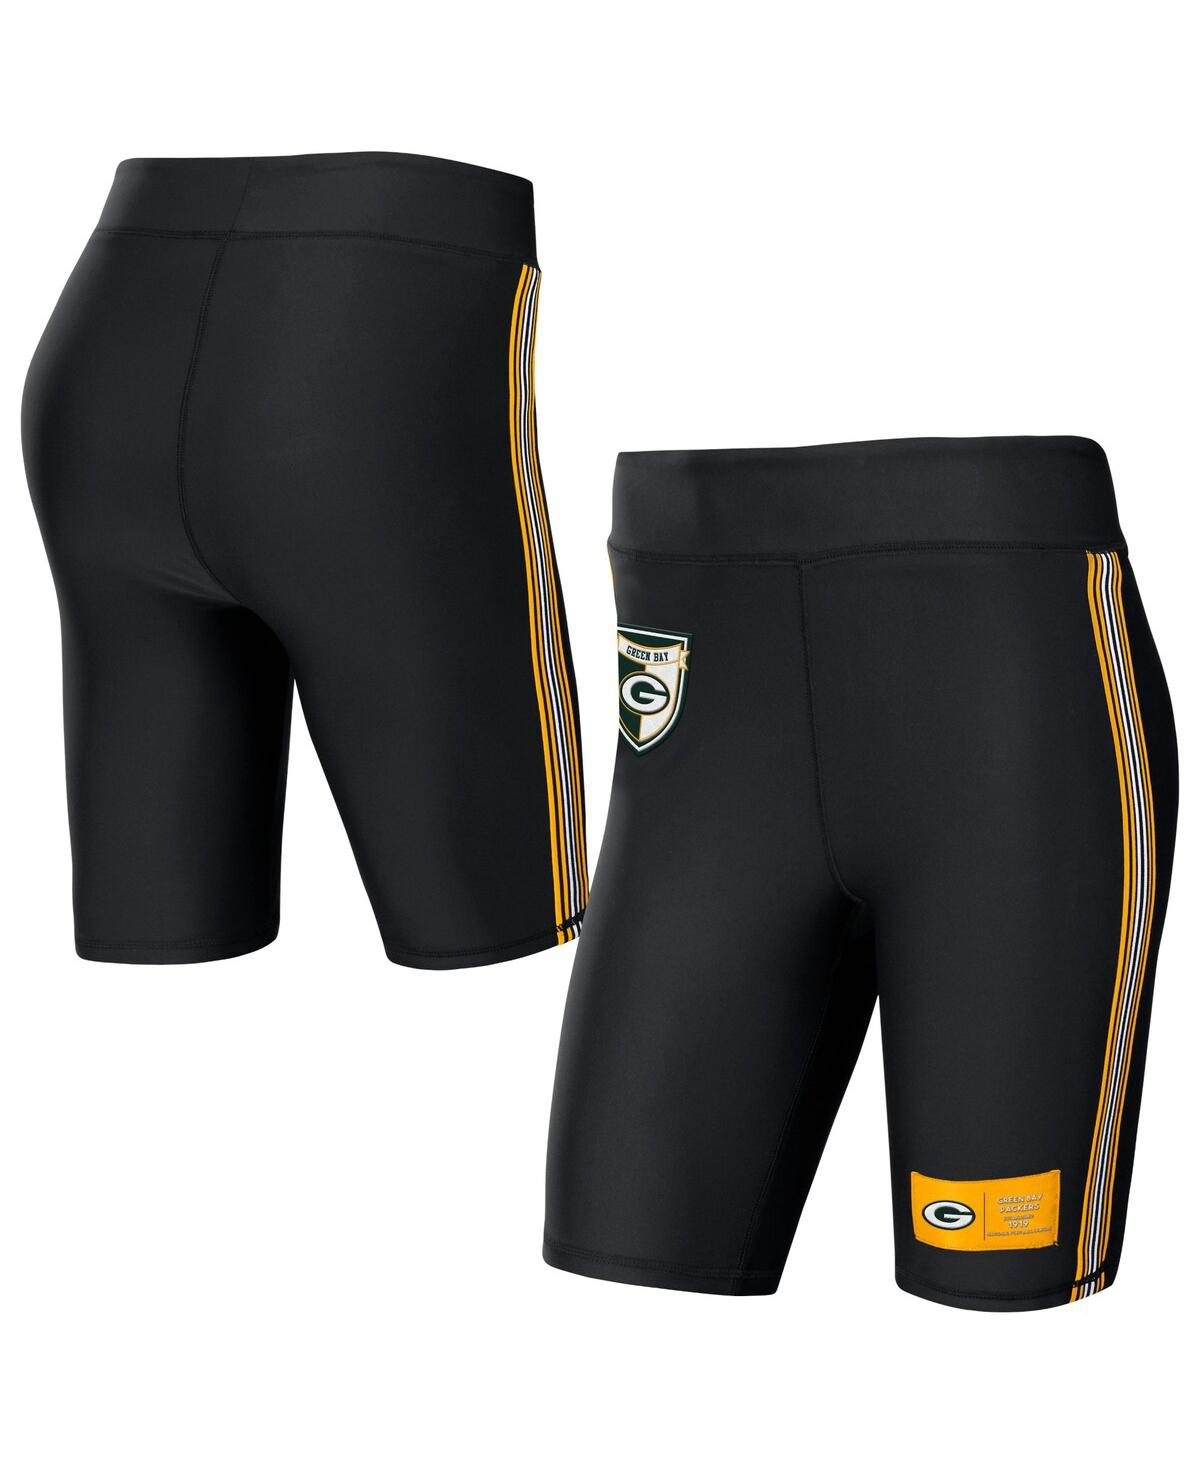 Shop Wear By Erin Andrews Women's  Black Green Bay Packers Biker Shorts